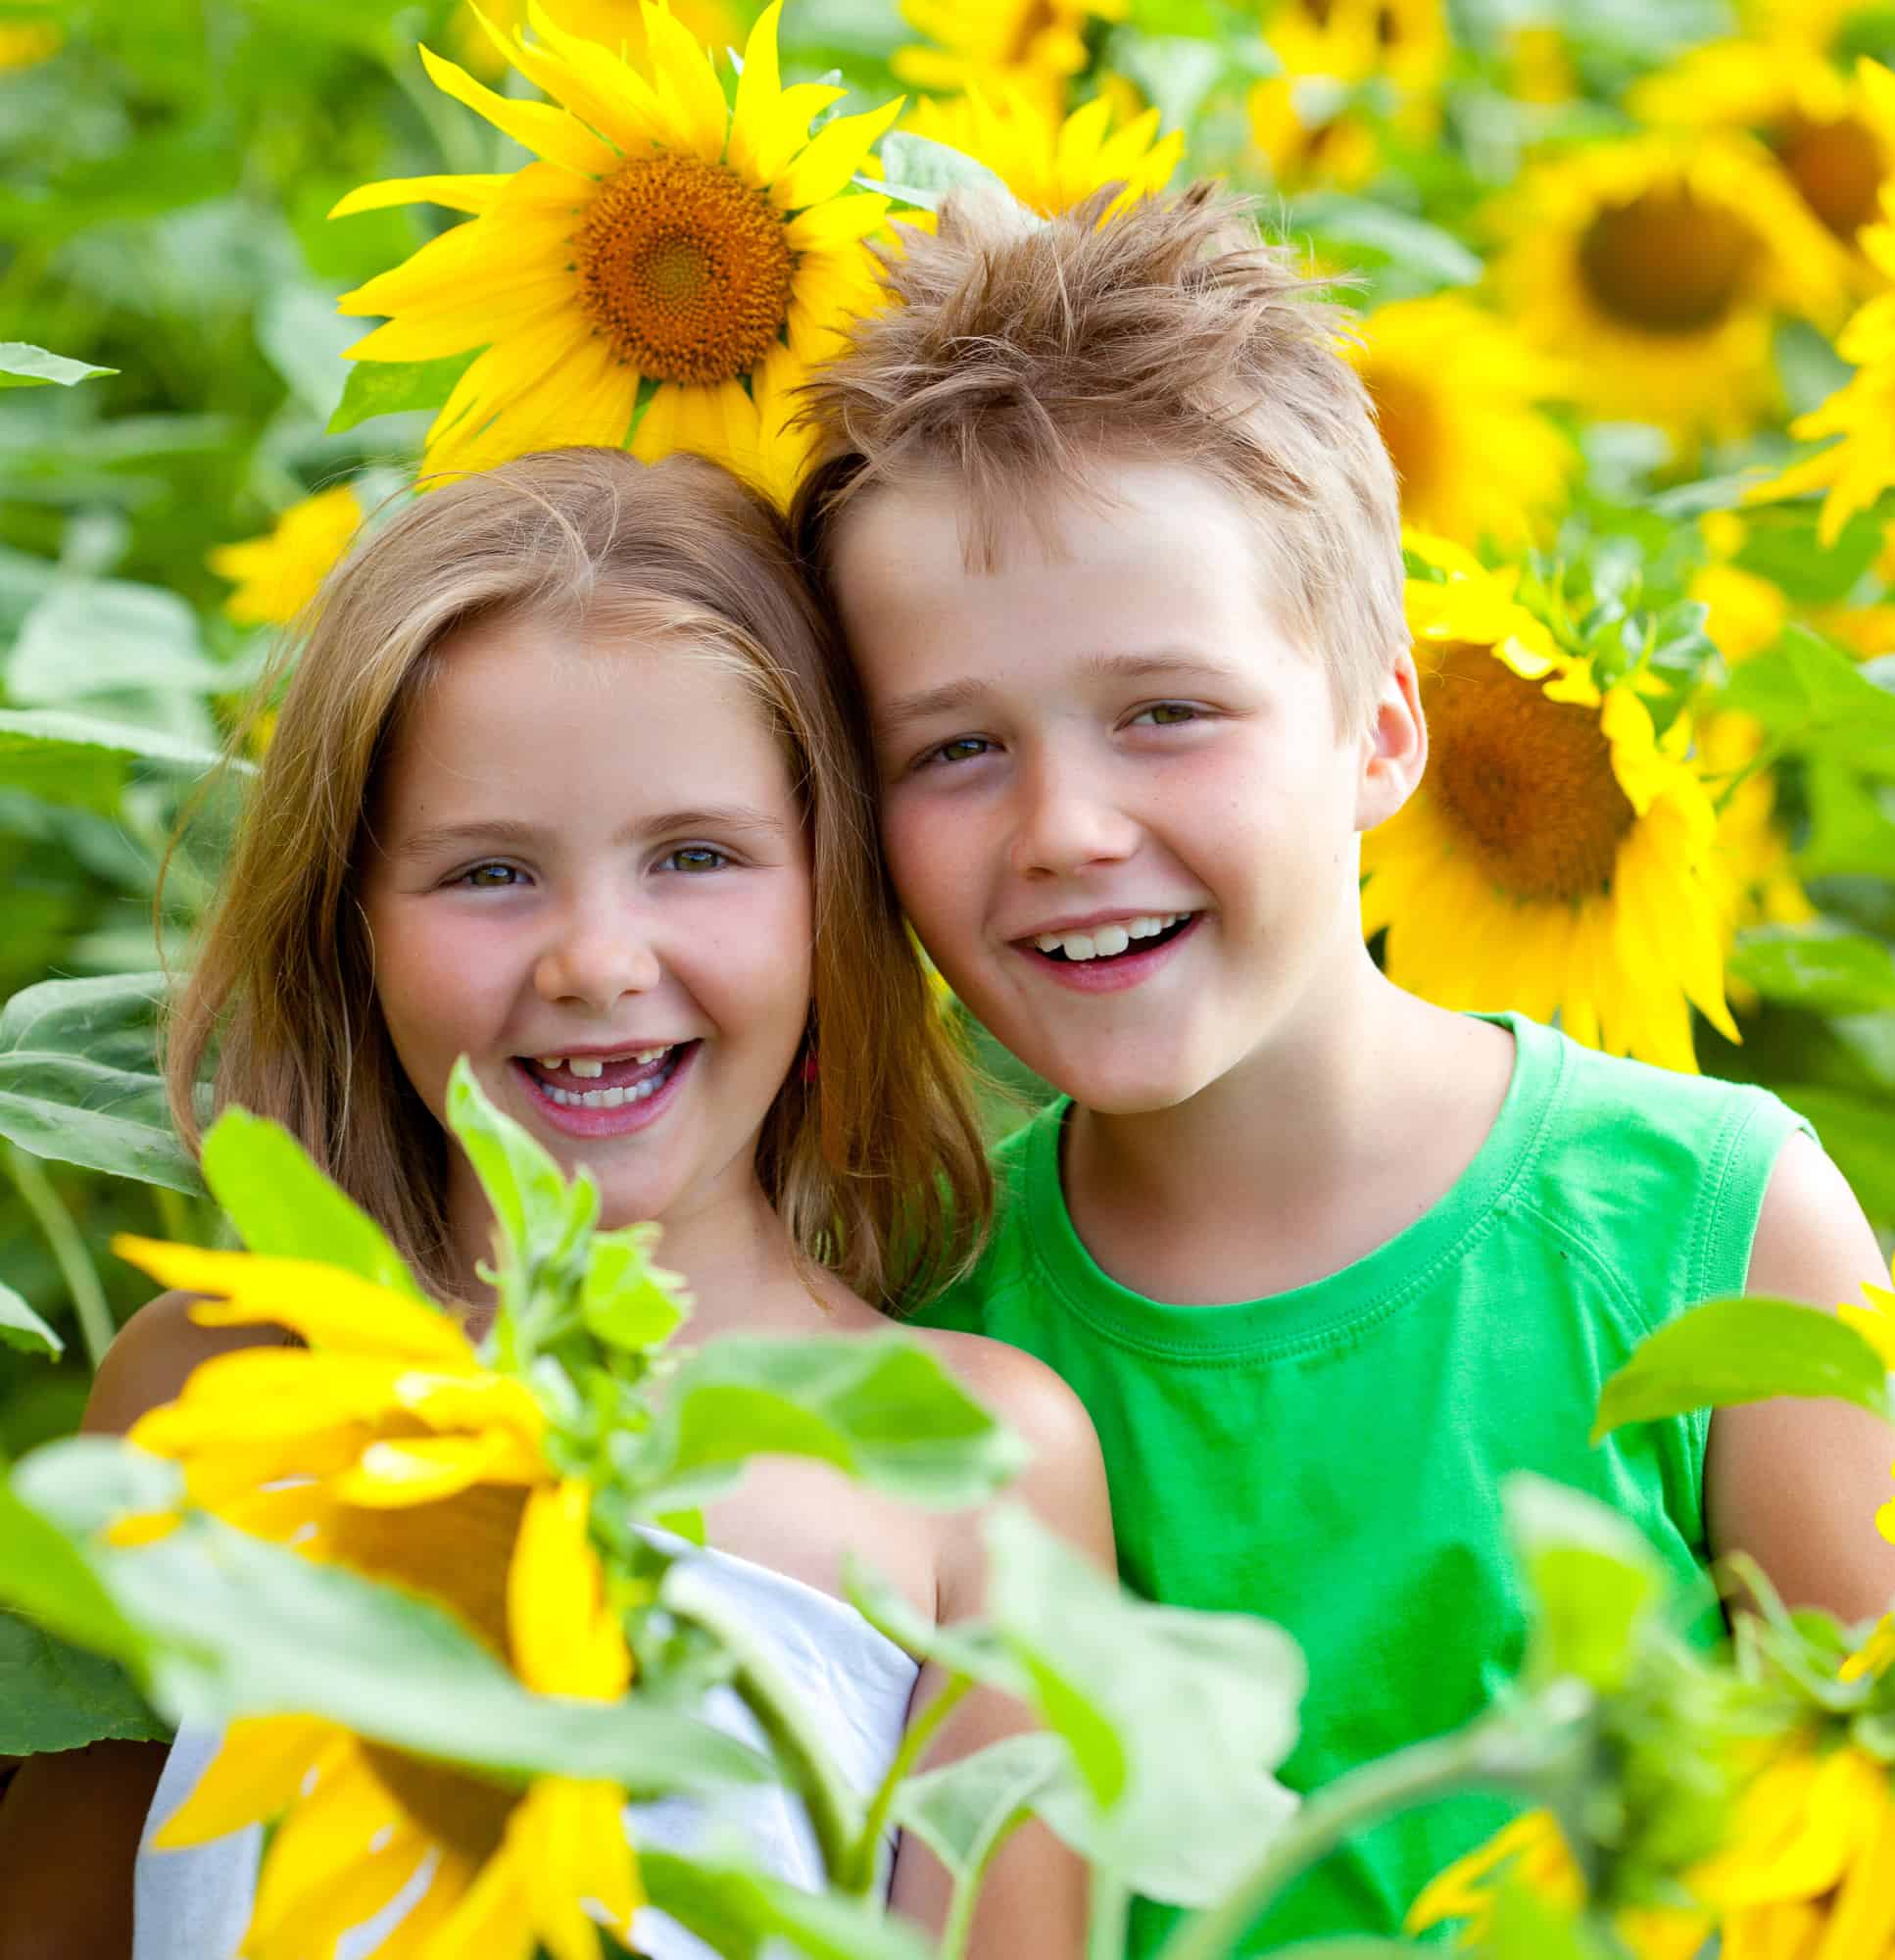 Ken's Sunflower Field & Children